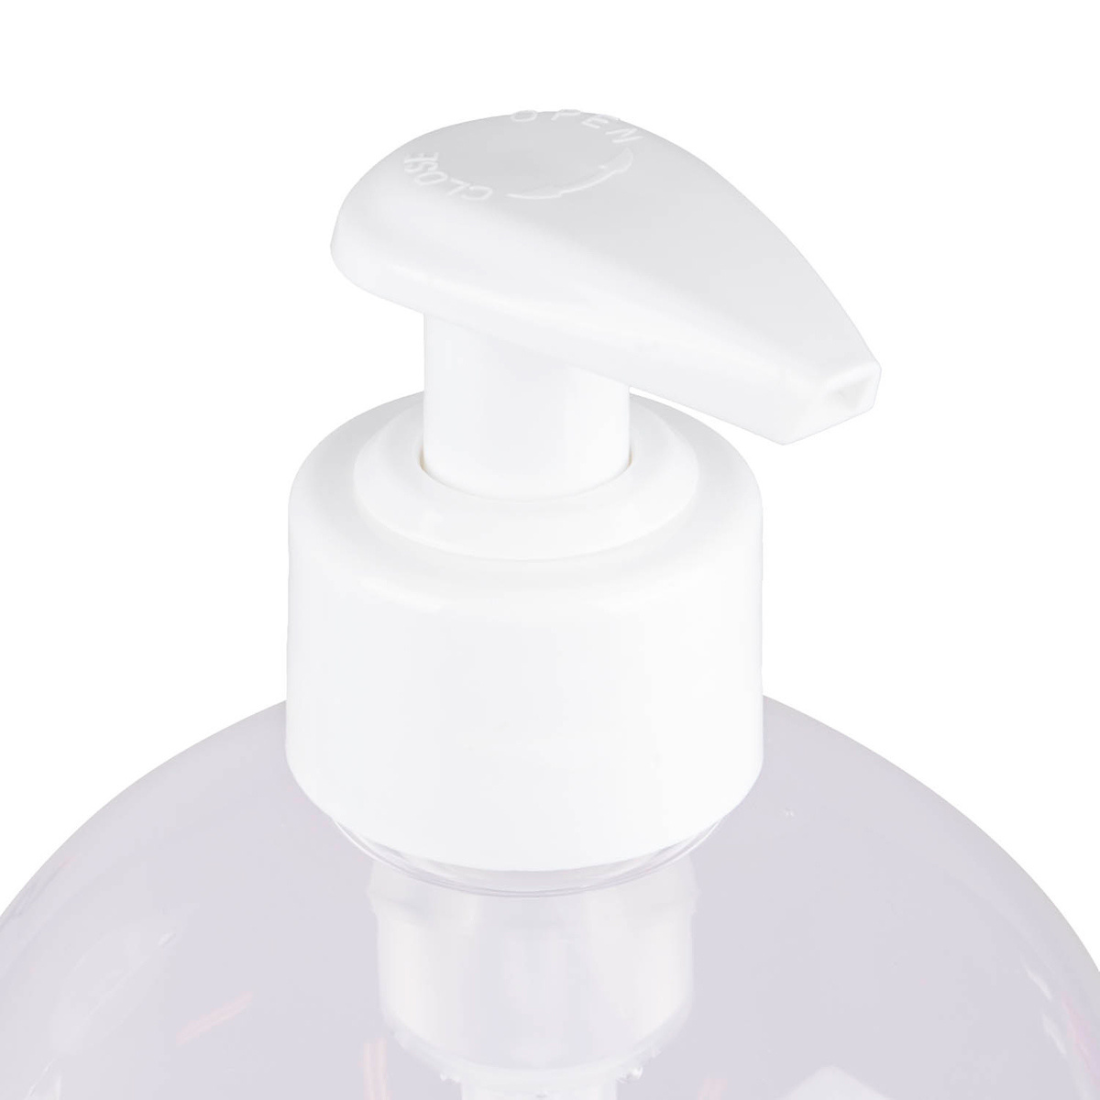 Grote fles (1000 ml) siliconen glijmiddel met doseerpompje van het merk EasyGlide, ontwikkeld door EasyToys en te koop bij Flavourez.